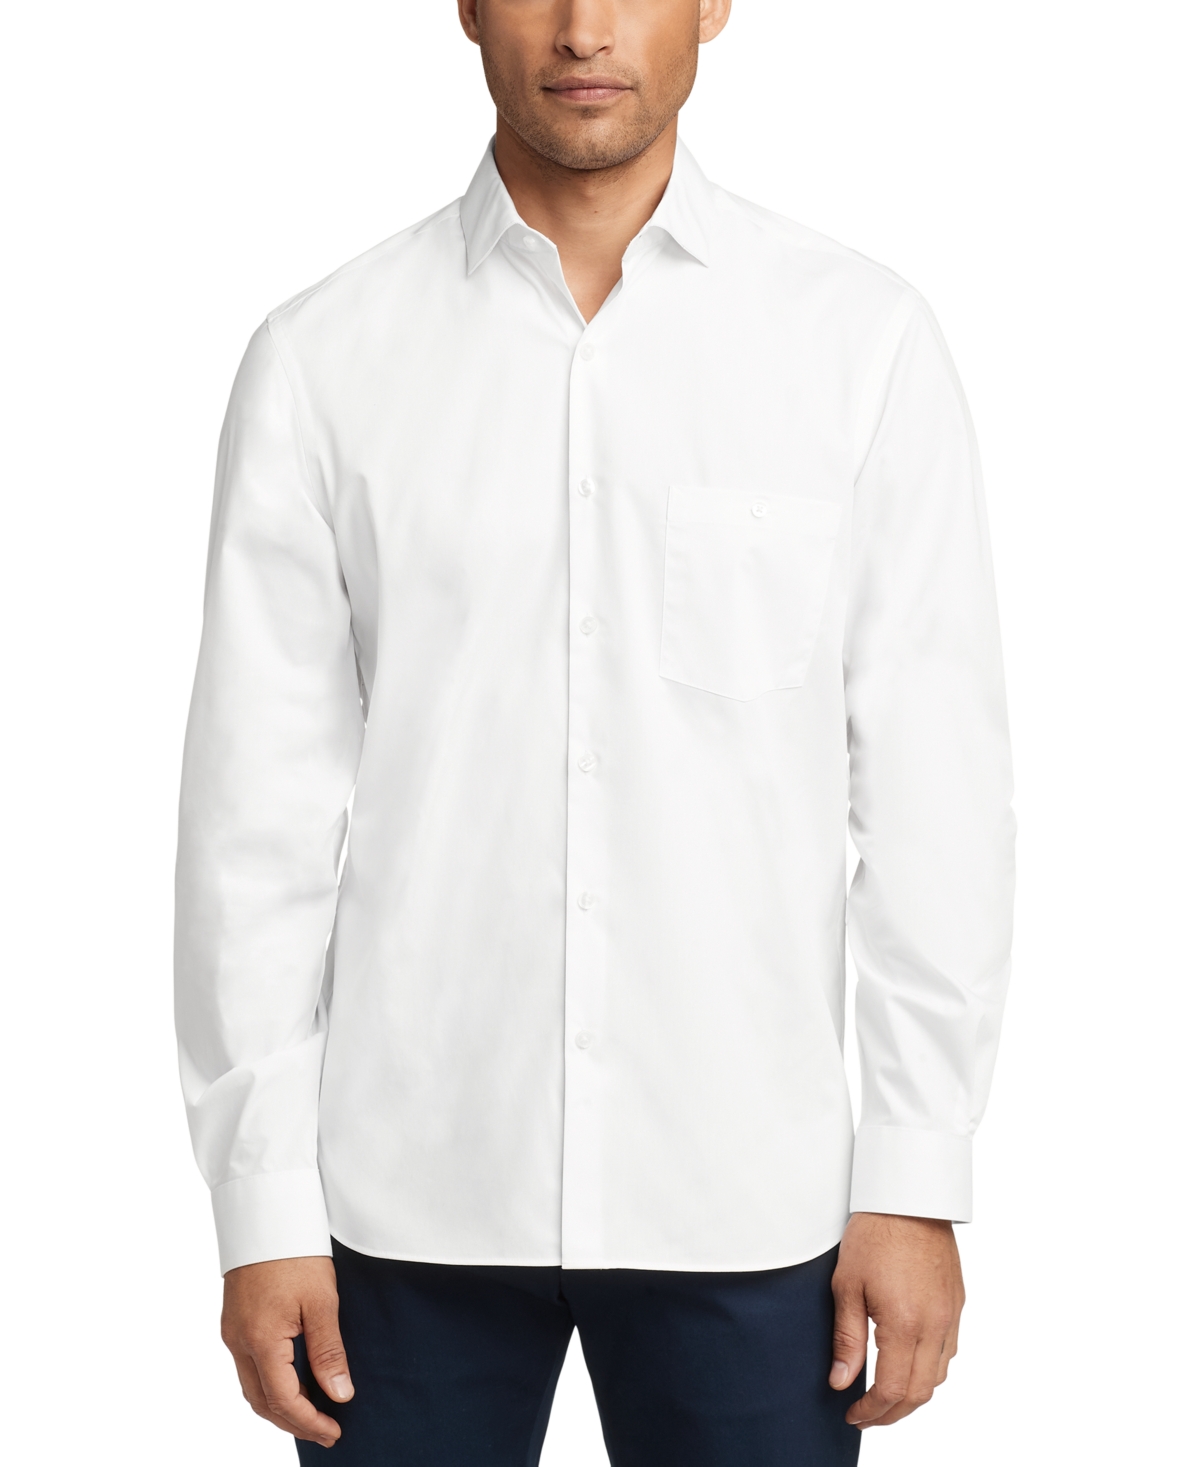 Men's Slim-Fit Never-Tuck Dress Shirt - White